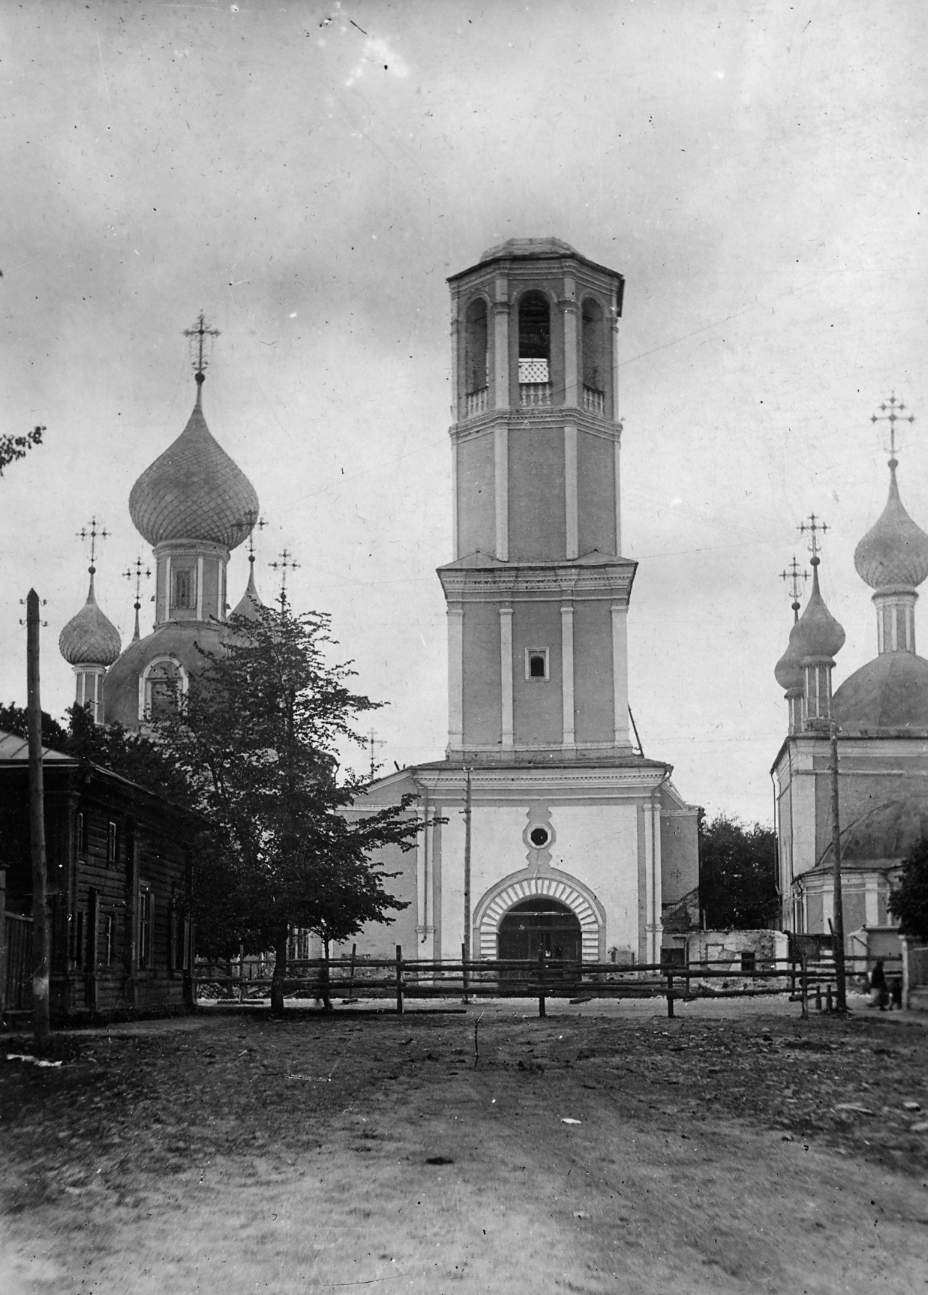 Переславский городской Собор, построен в 1740 году на месте бывшего женского монастыря мещанином Филиппом Фаддеевым Угрюмовым